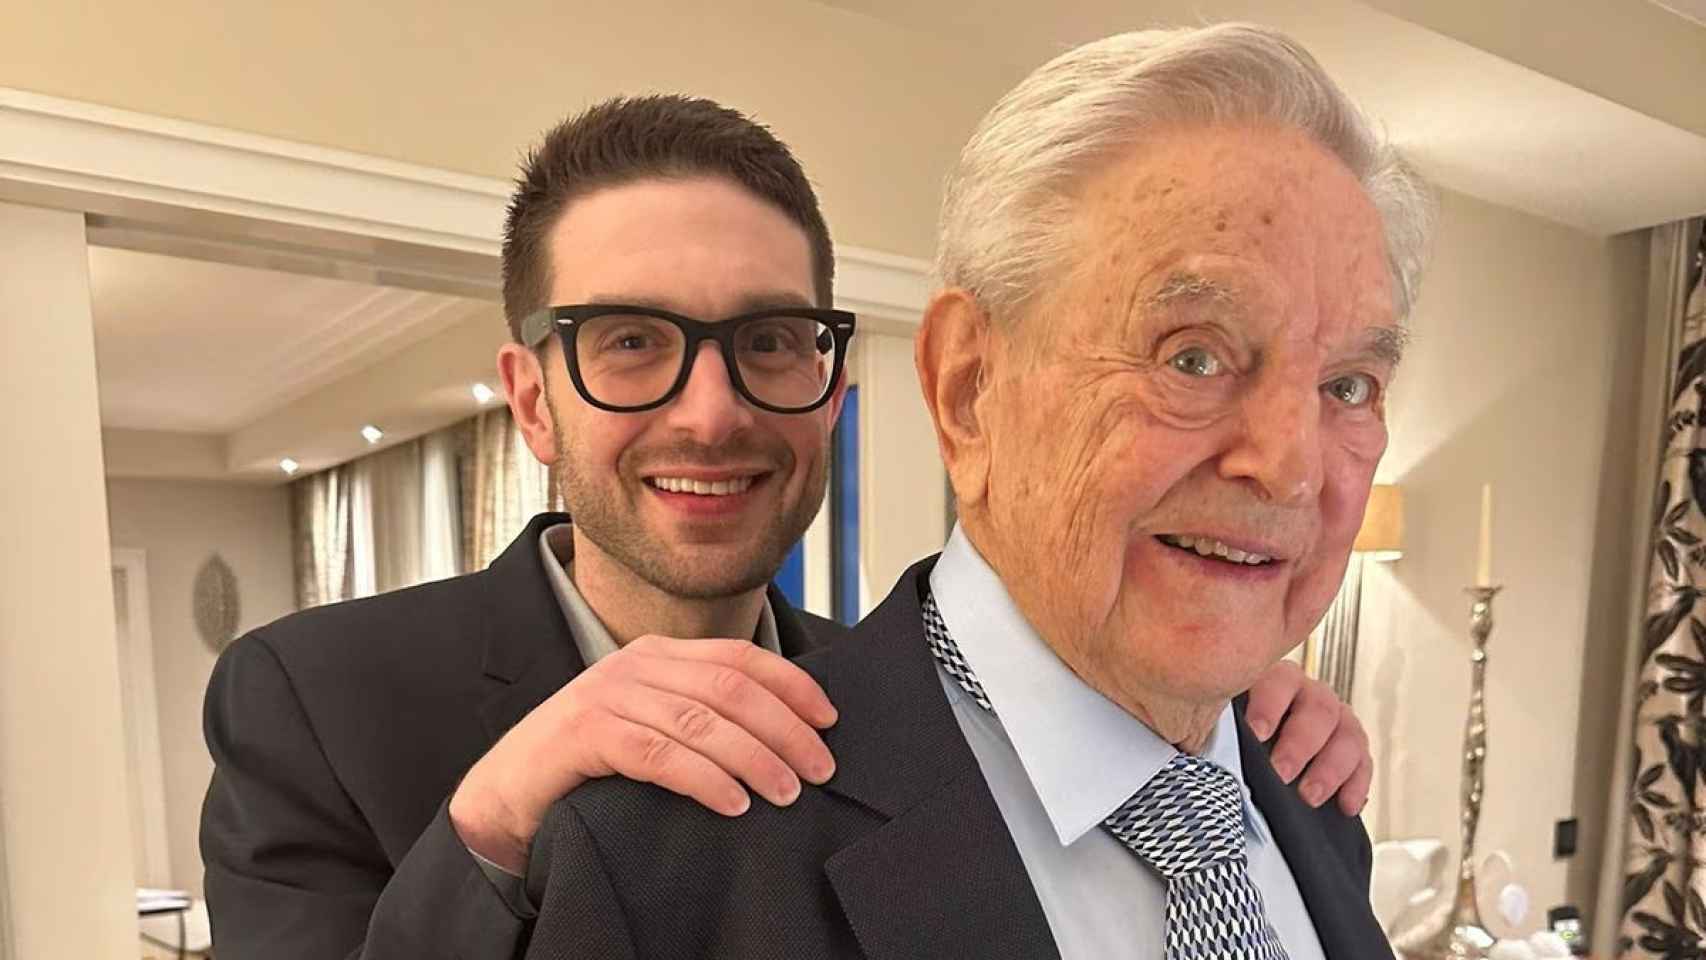 Alexander y George Soros, en una foto en redes sociales.